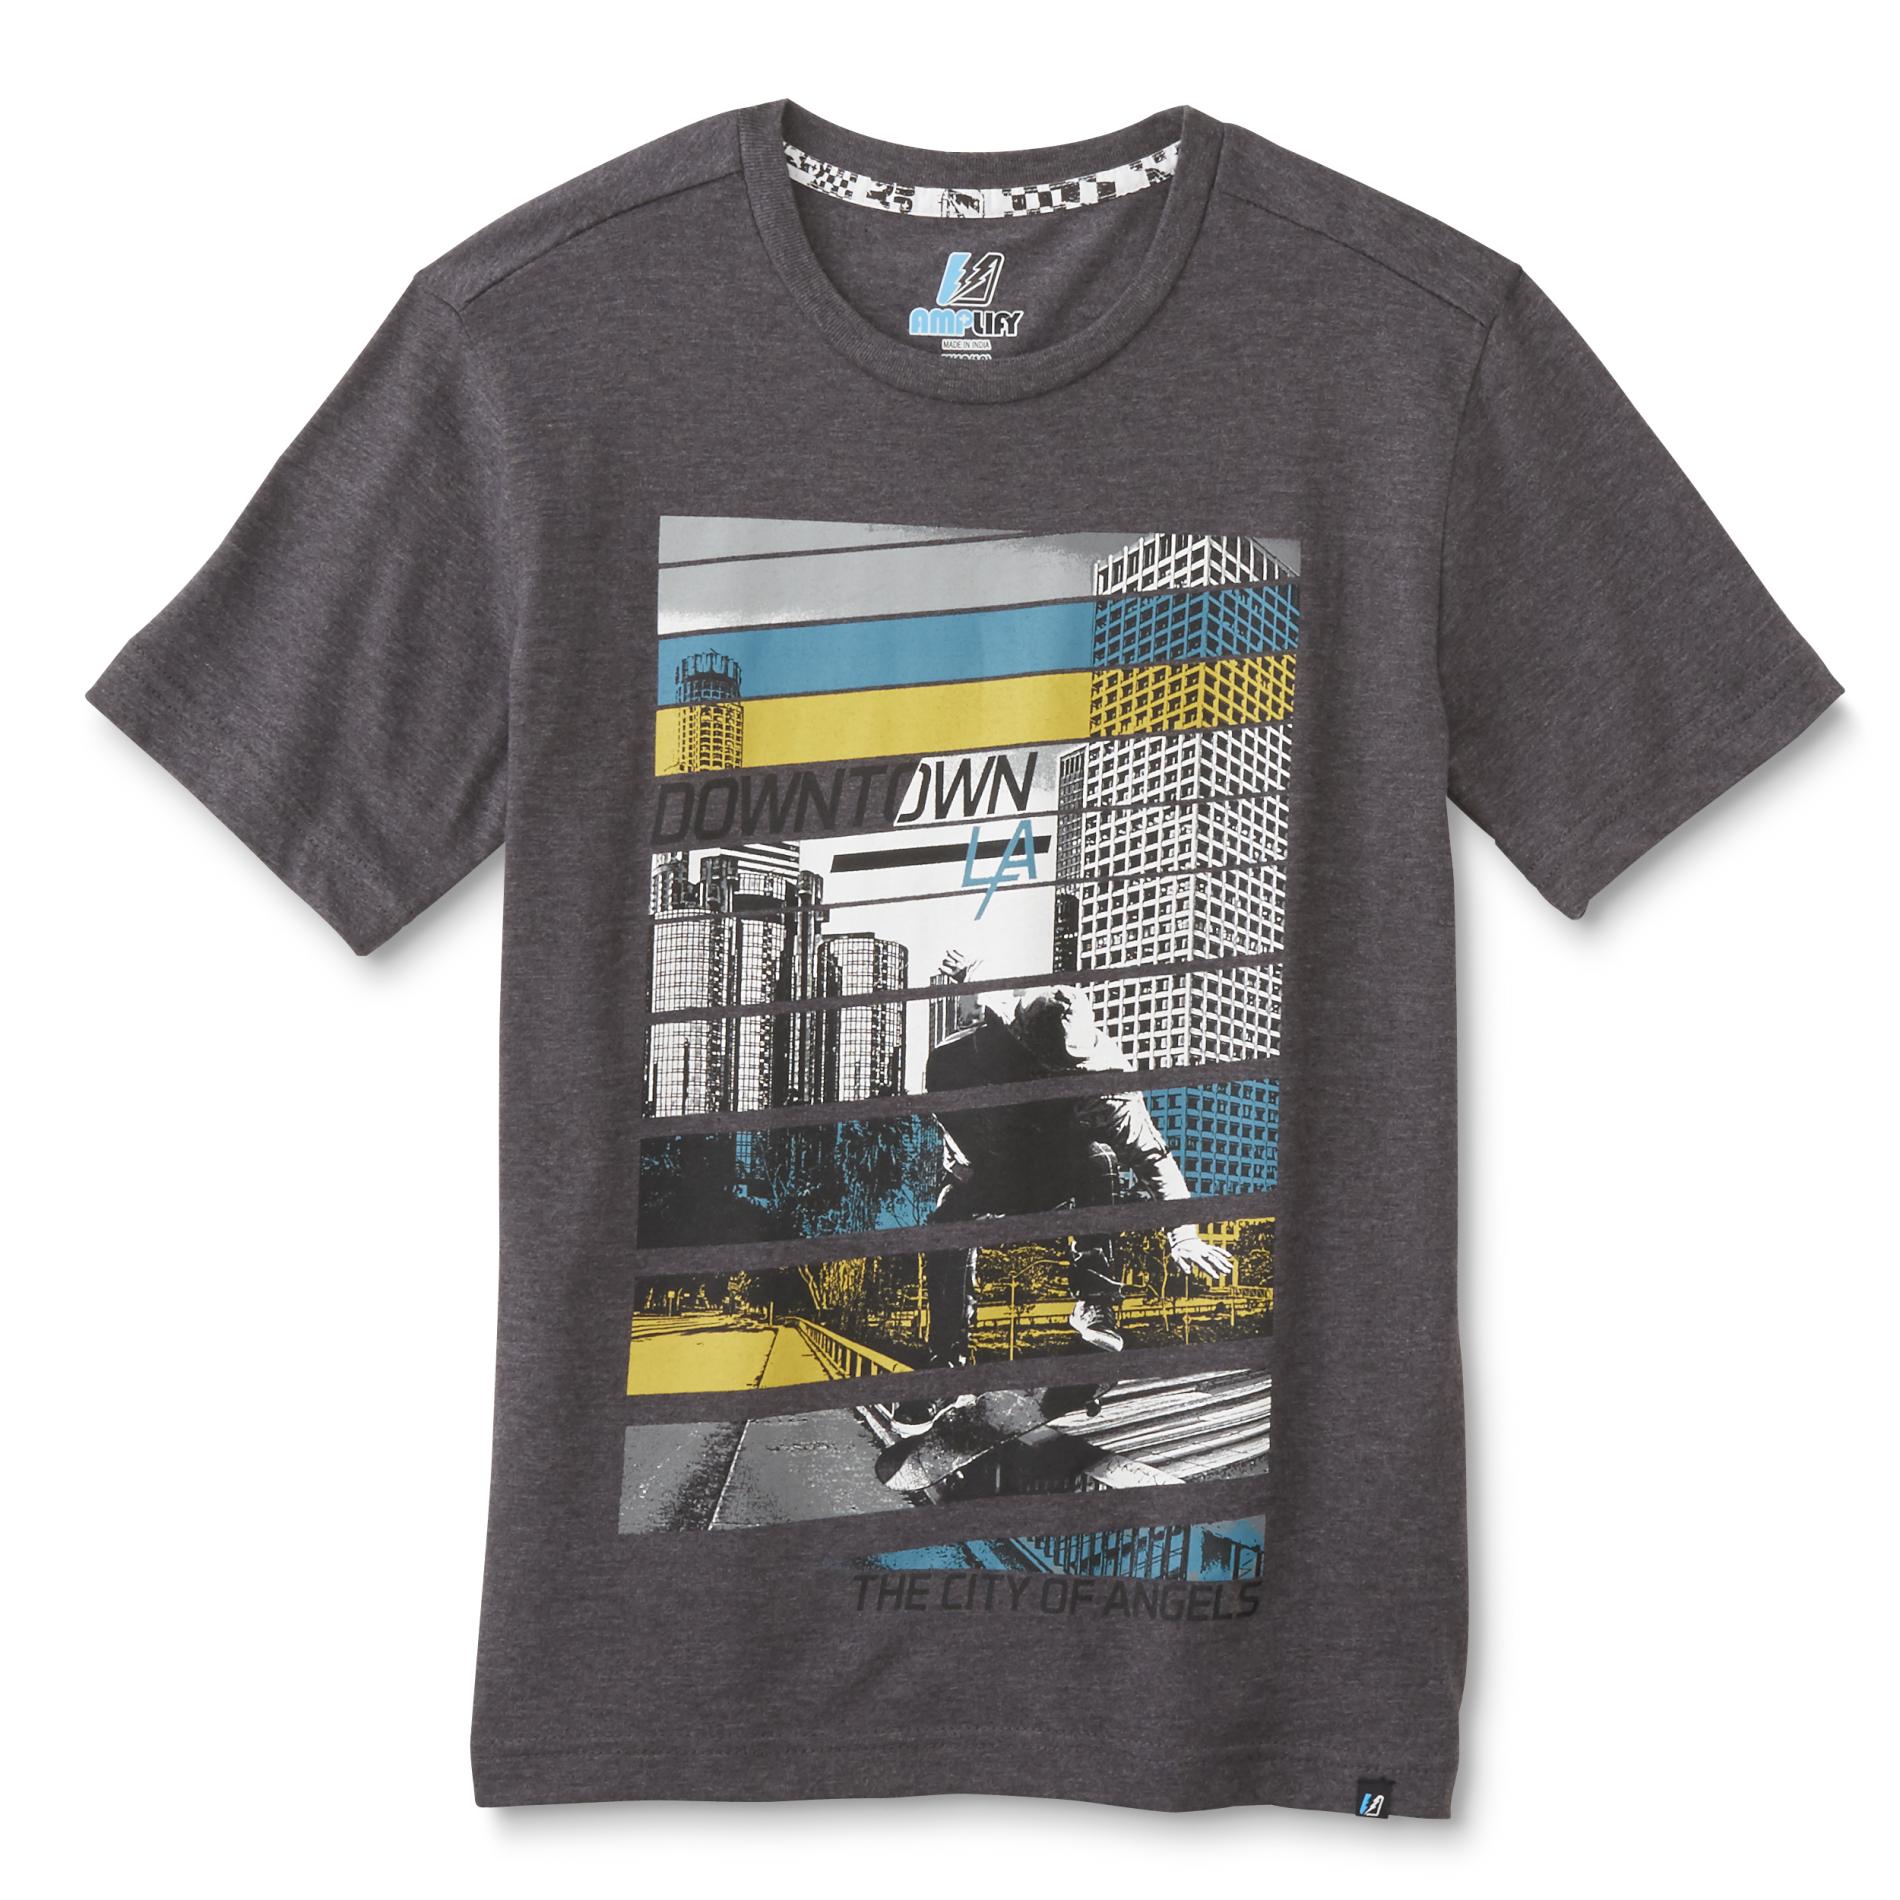 Amplify Boy's Graphic T-Shirt - Downtown LA Skateboarder